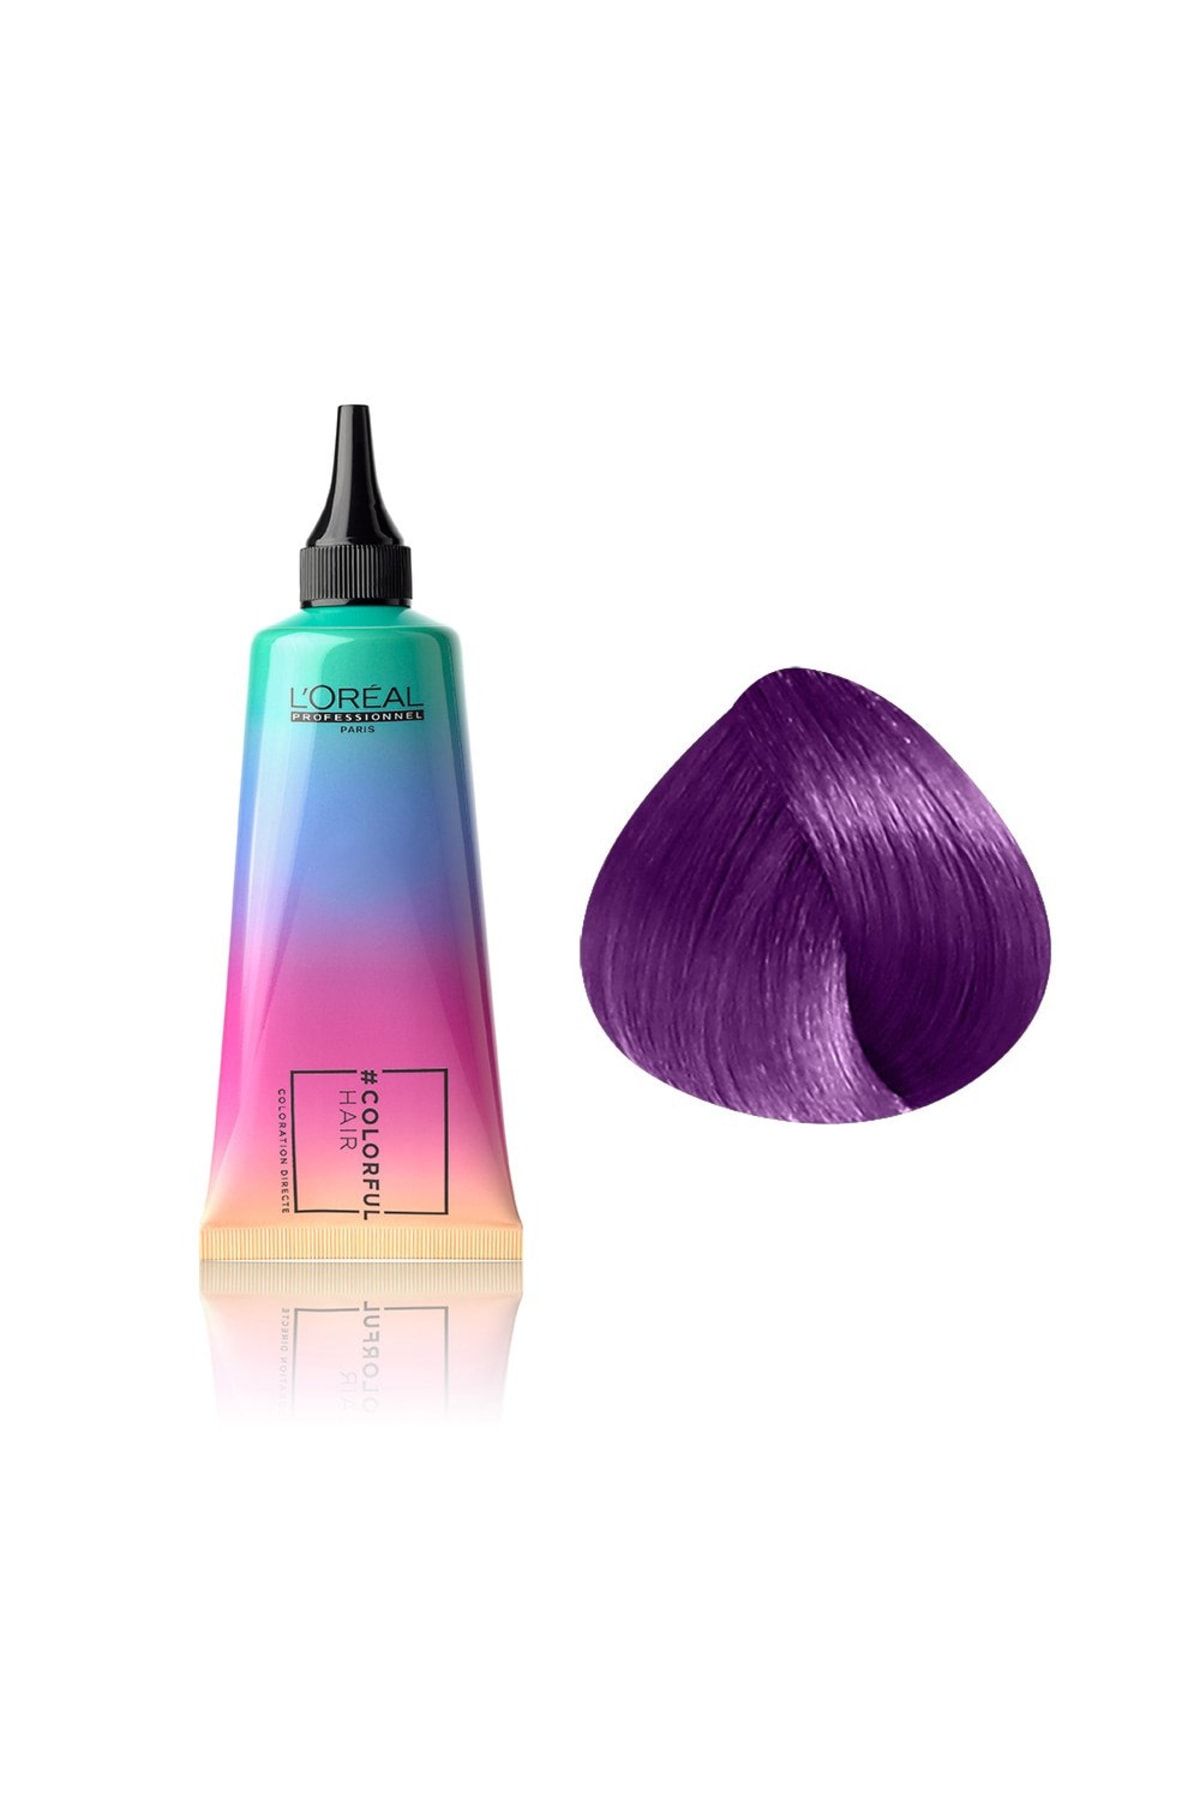 L'oreal Professionnel Colorful Hair Electric Purple Mor Belirgin Yarı Kalıcı Amonyaksız Saç Boyası 90ml